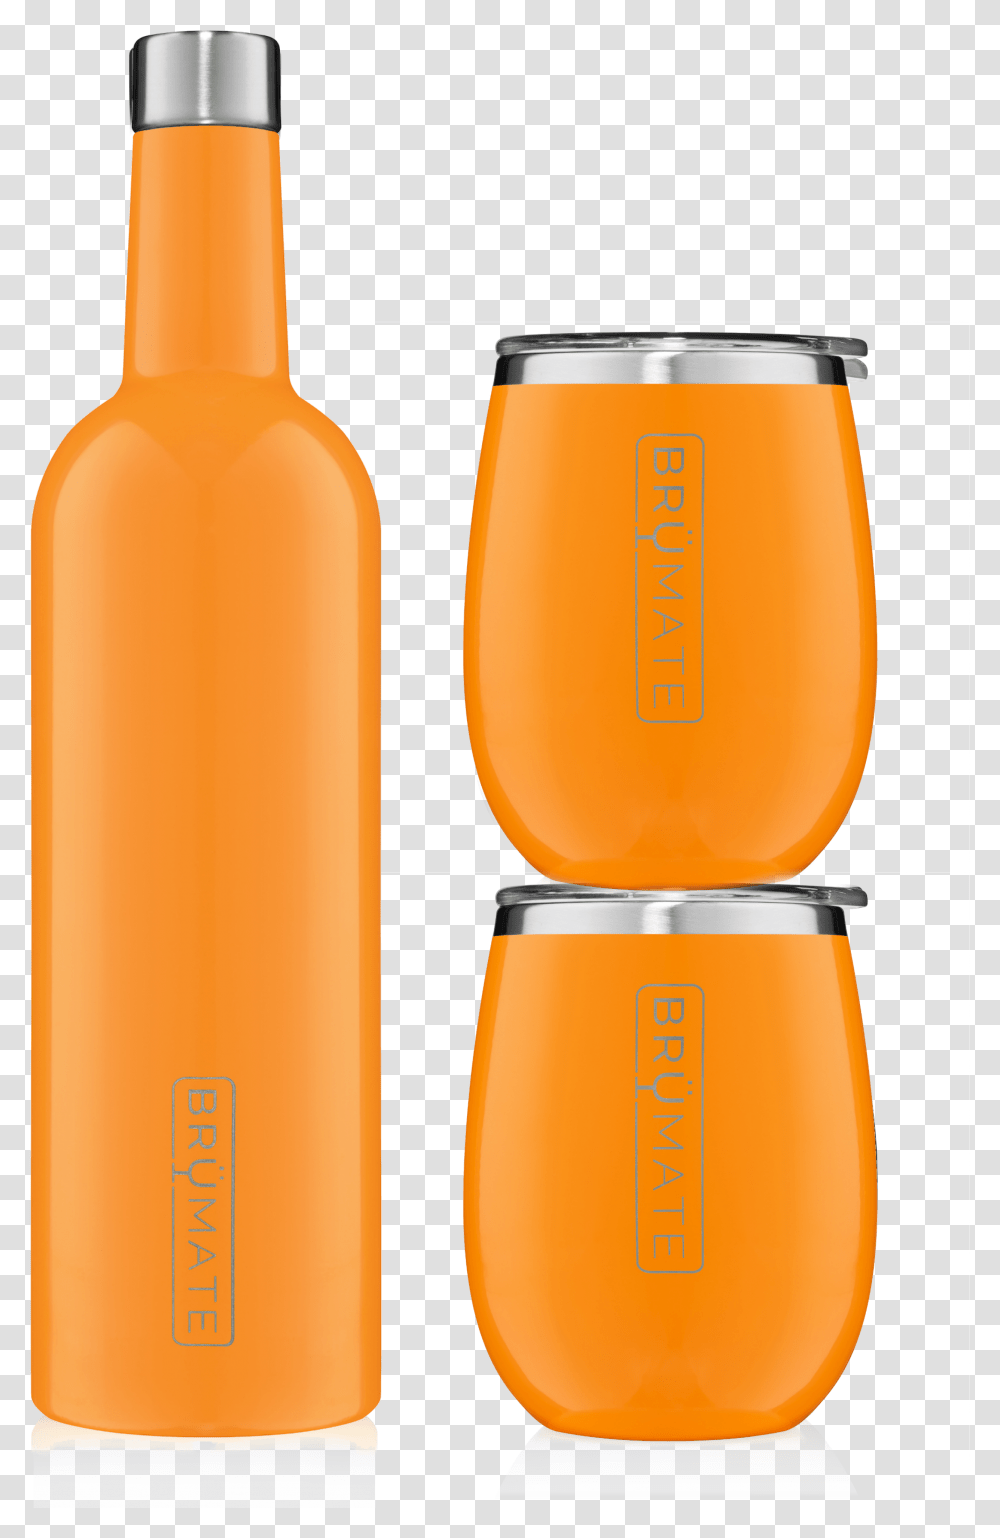 Glass Bottle, Juice, Beverage, Drink, Orange Juice Transparent Png